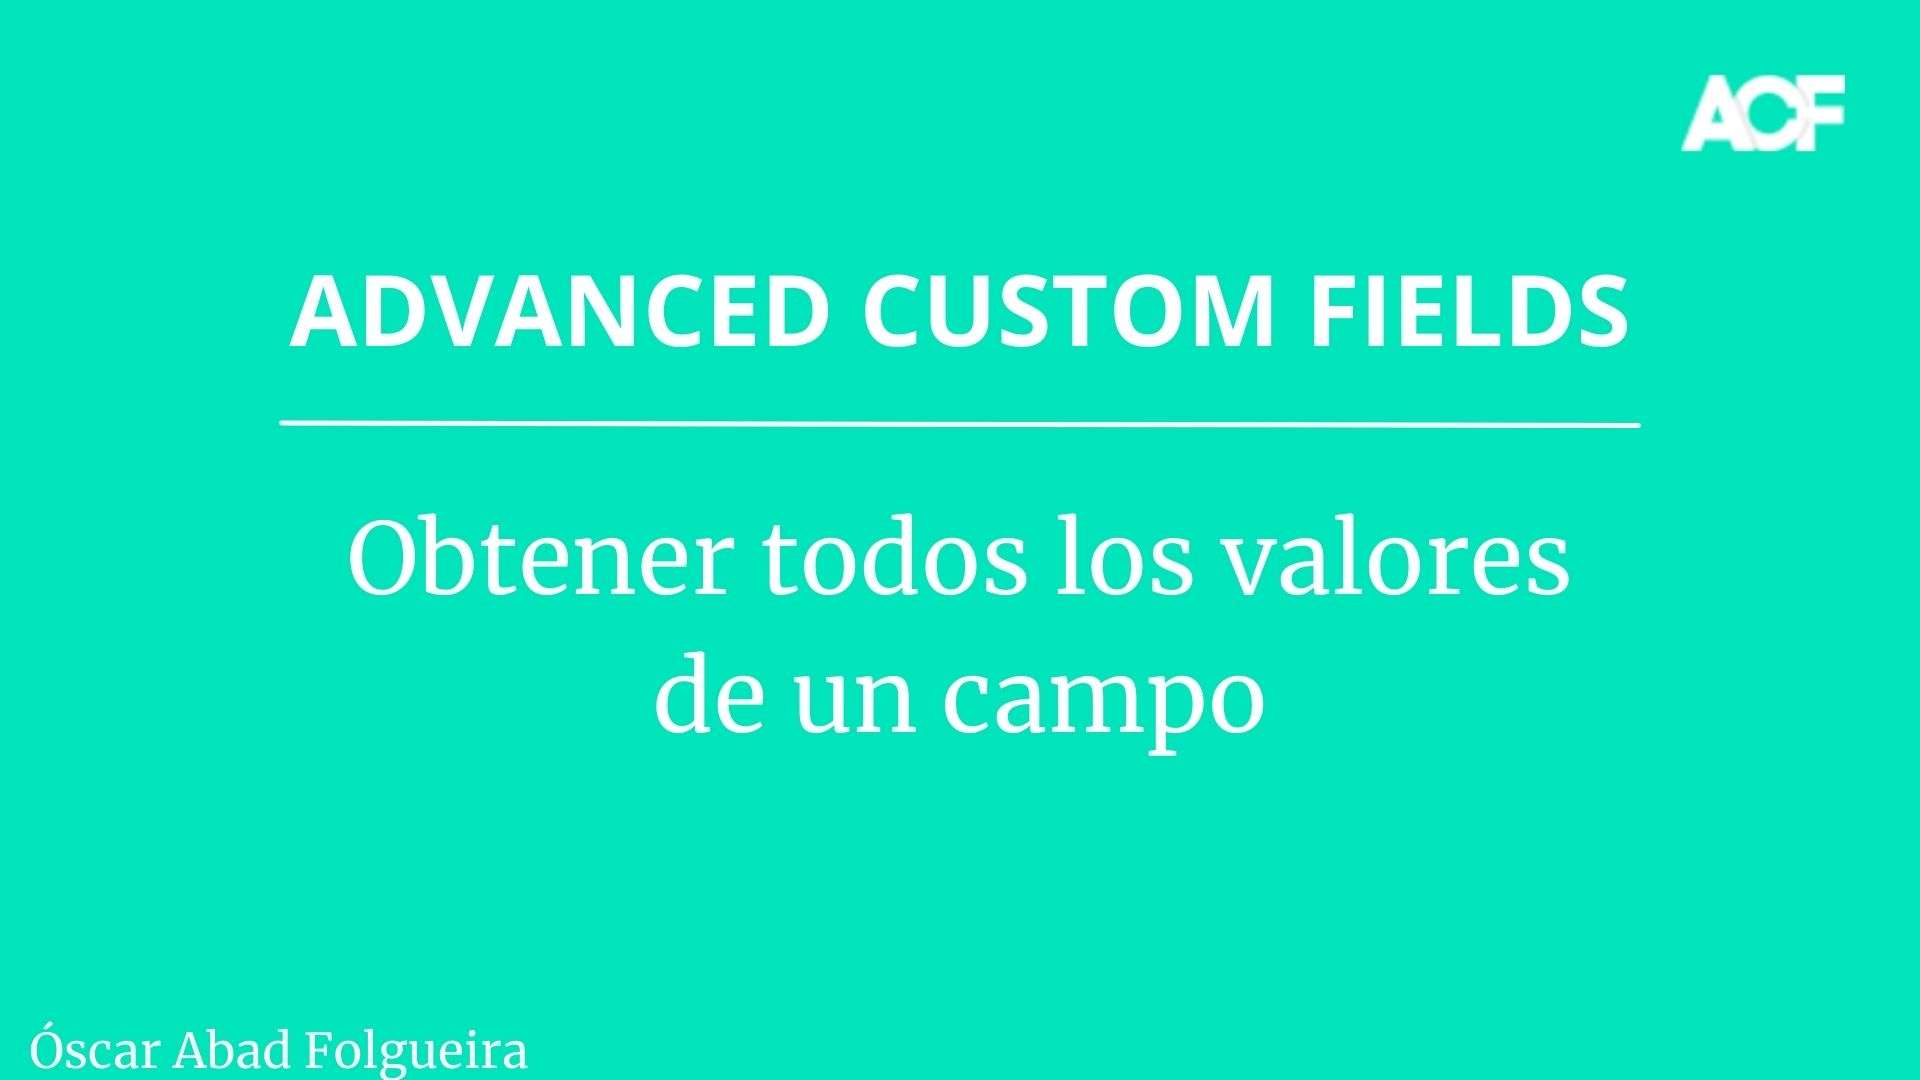 Advanced Custom Fields: Obtener todos los valores de un campo